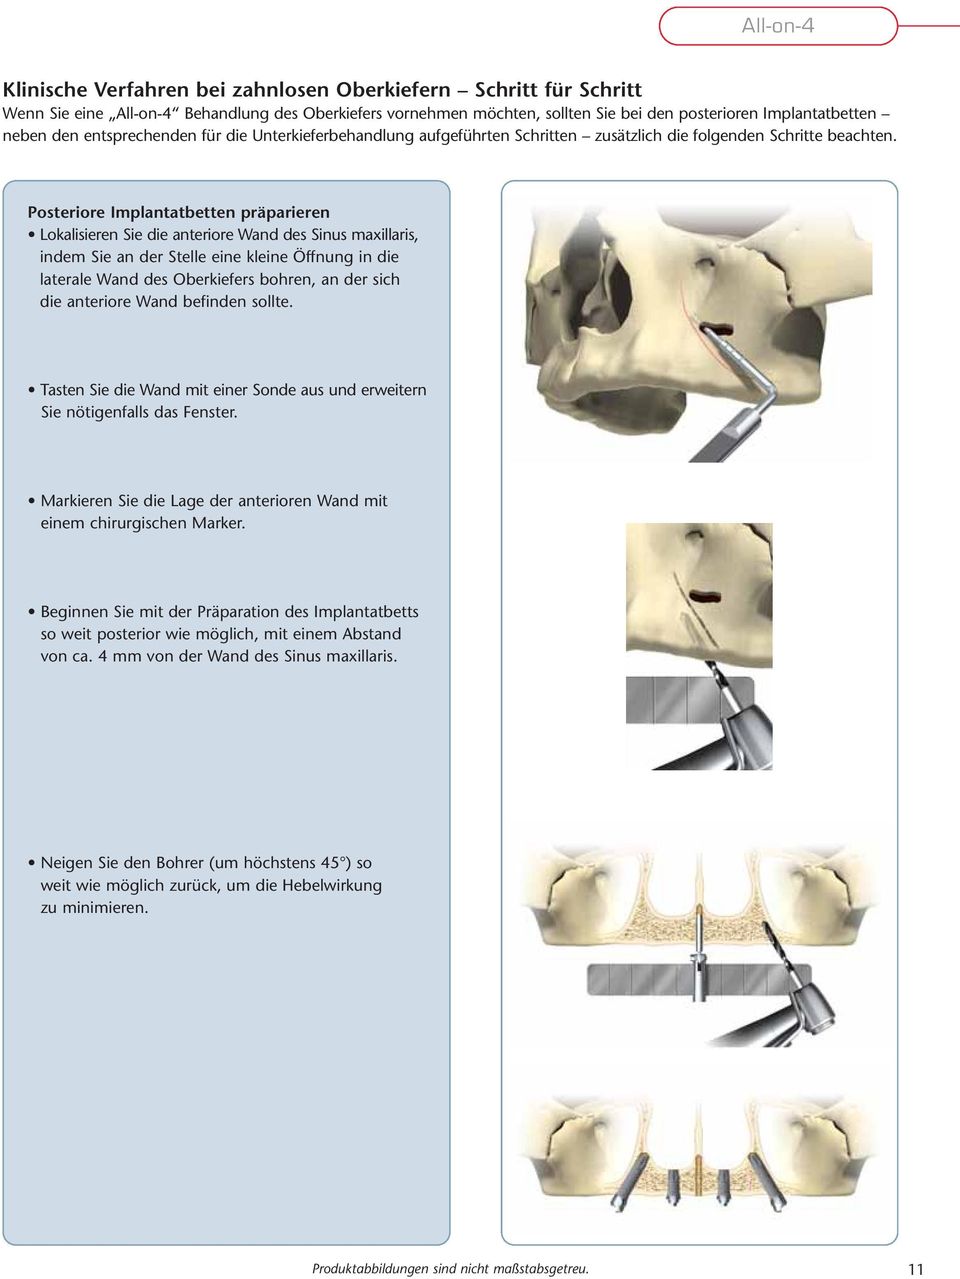 Posteriore Implantatbetten präparieren Lokalisieren Sie die anteriore Wand des Sinus maxillaris, indem Sie an der Stelle eine kleine Öffnung in die laterale Wand des Oberkiefers bohren, an der sich